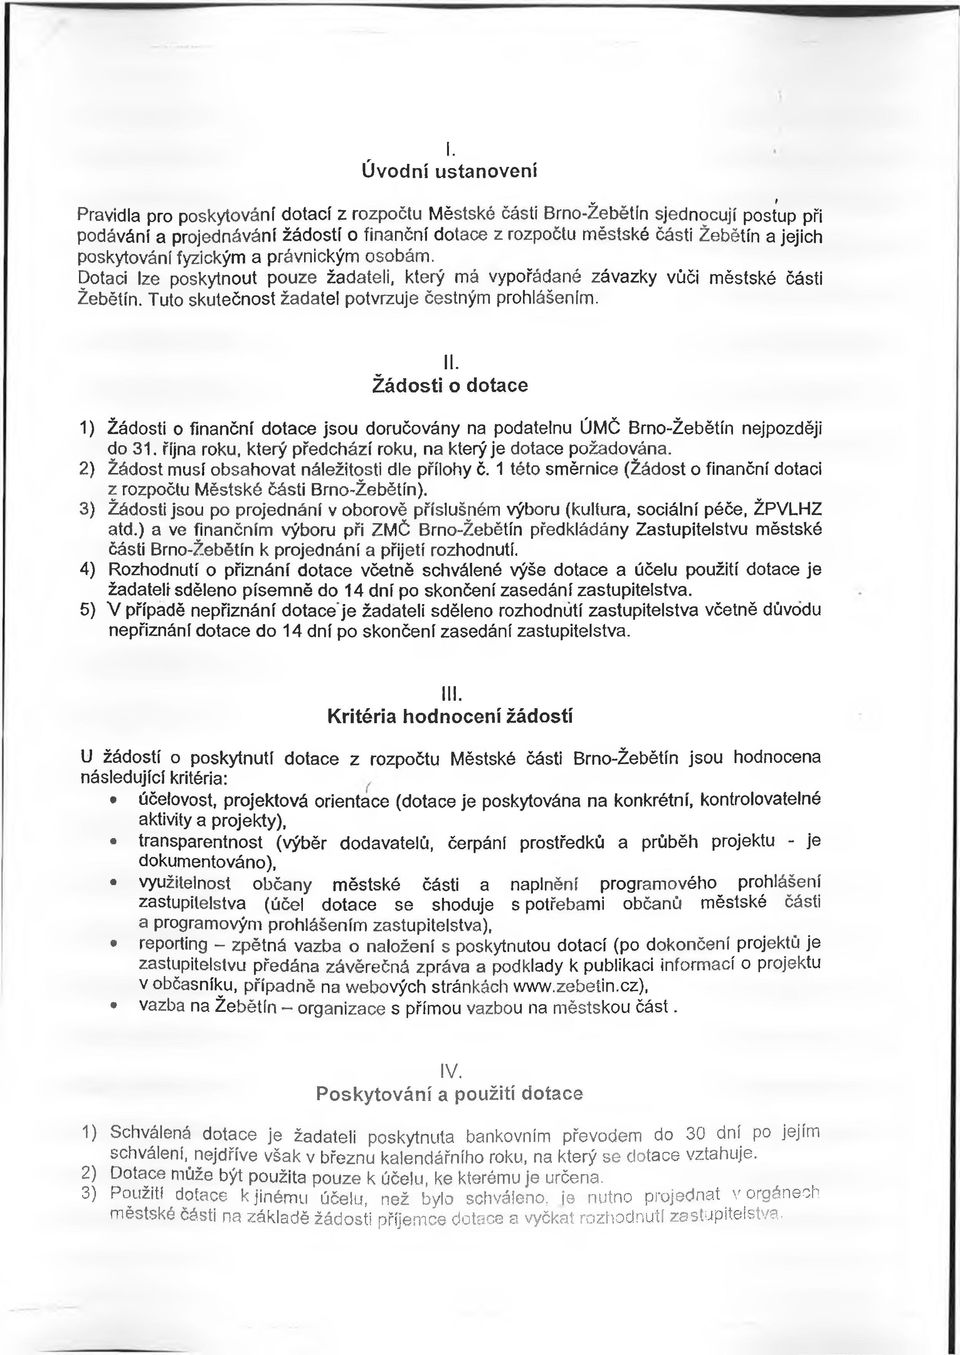 Tuto skutečnost žadatel potvrzuje čestným prohlášením. II. Žádosti o dotace 1) Žádosti o finanční dotace jsou doručovány na podatelnu ÚMČ Brno-Žebětín nejpozději do 31.